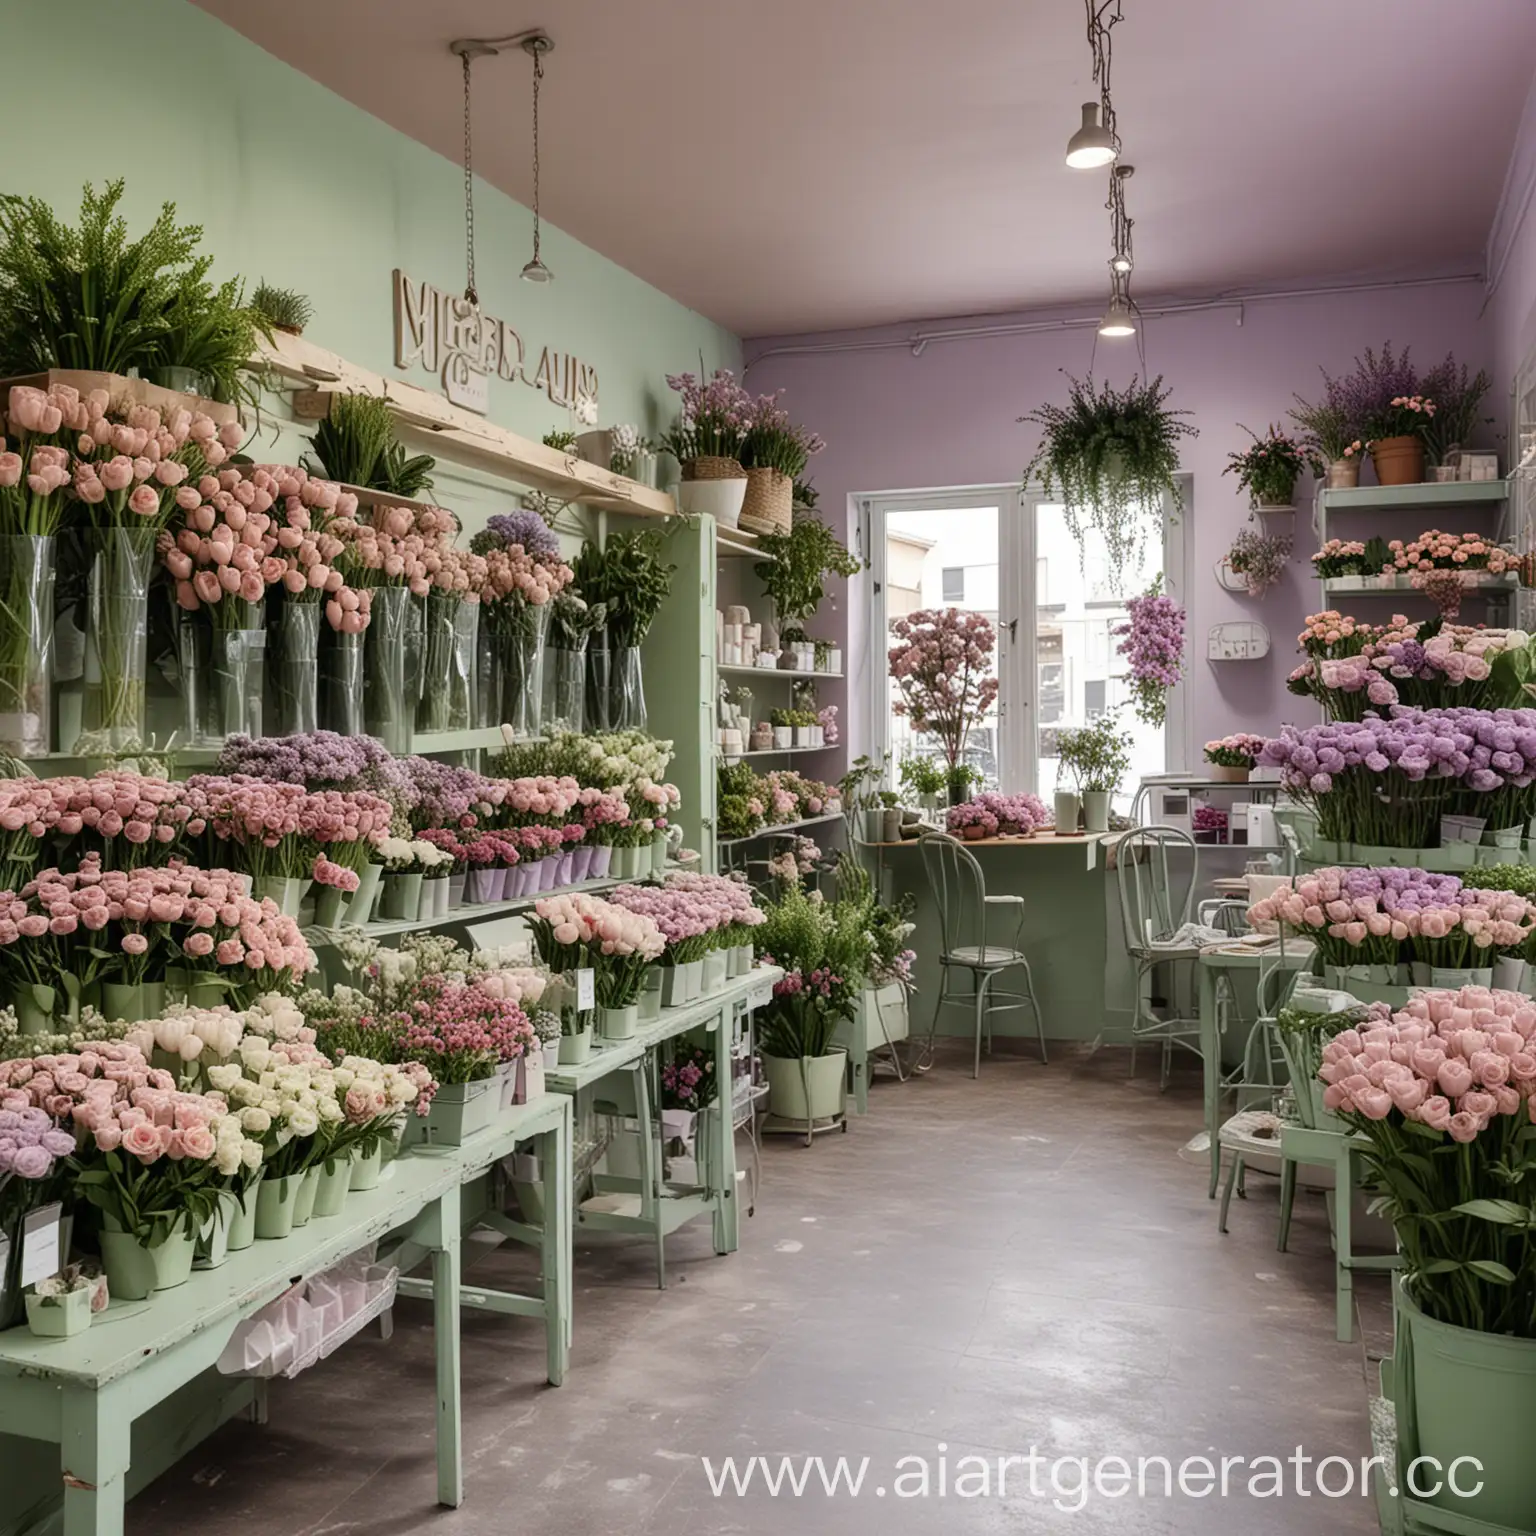 Интерьер цветочного магазина в нежных оттенках зеленого и светло-фиолетового цветов